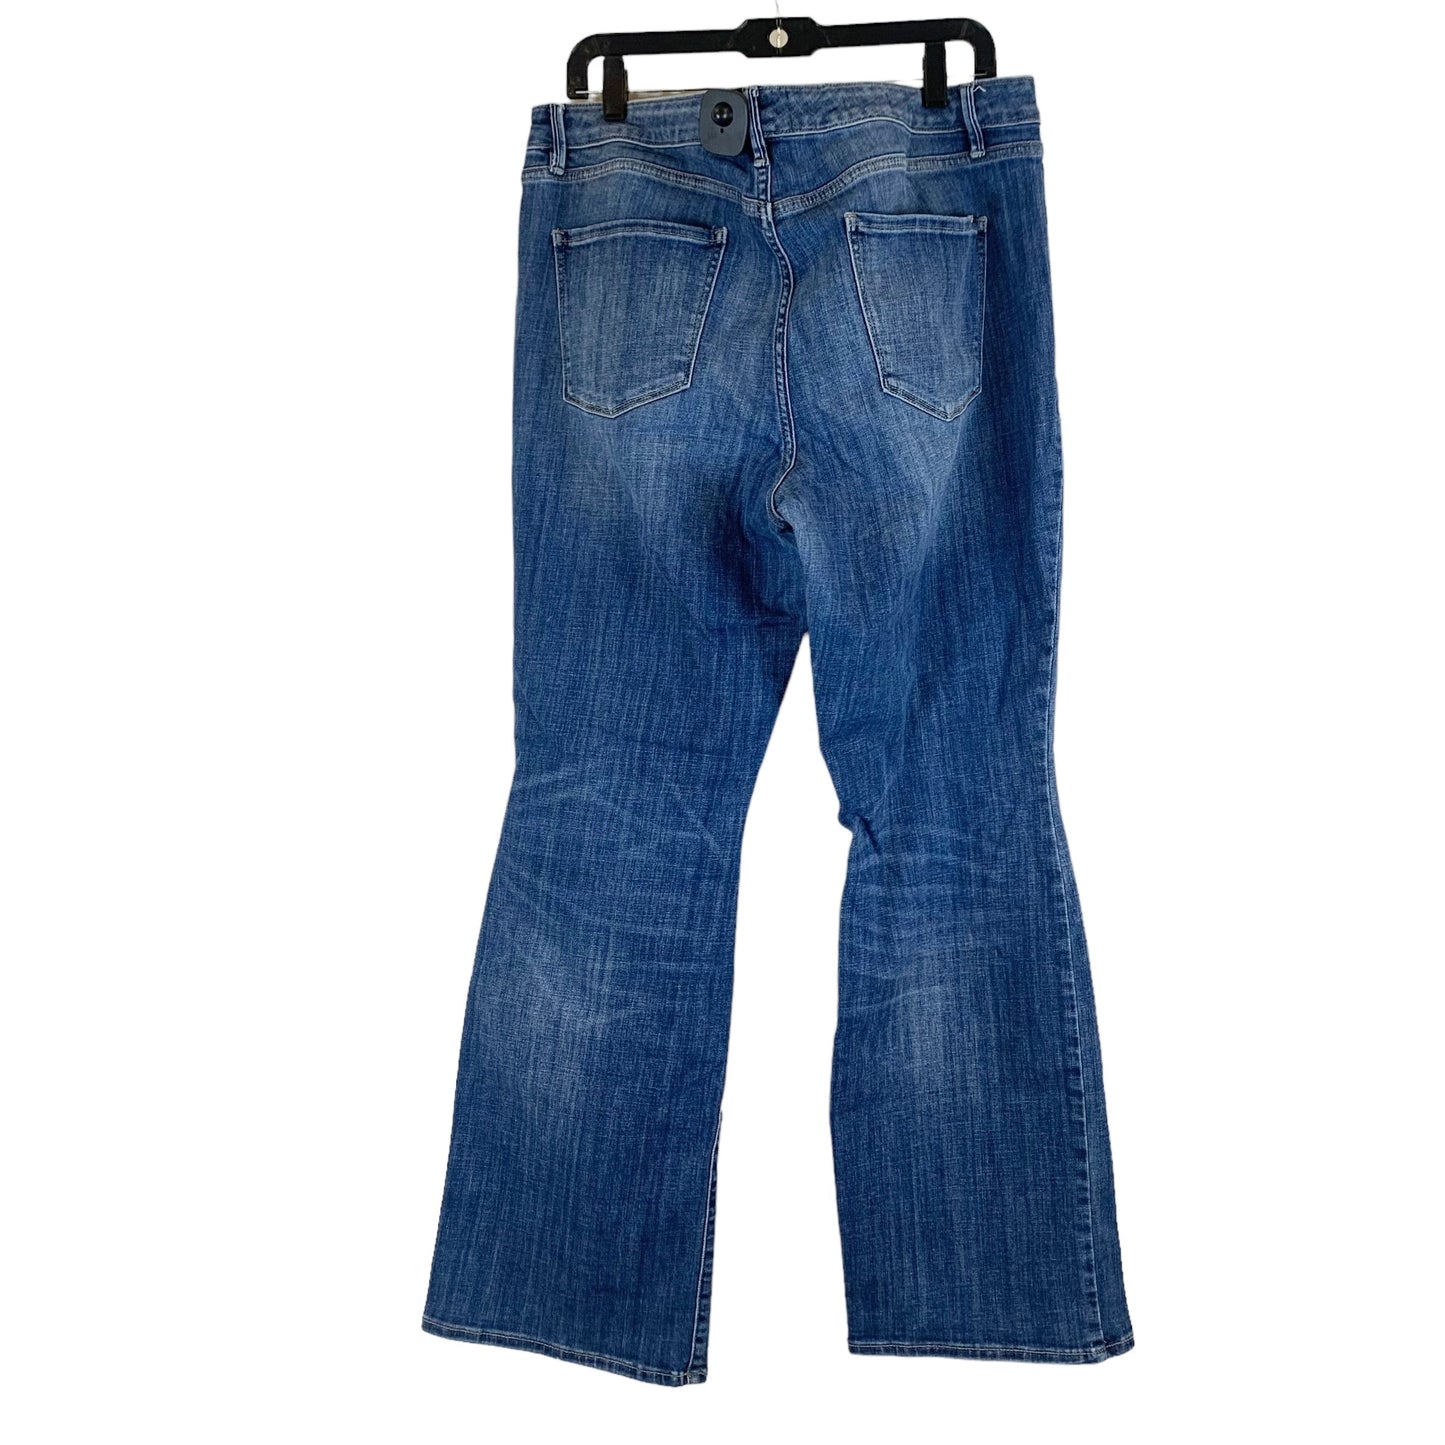 Blue Denim Jeans Boot Cut White House Black Market, Size 18